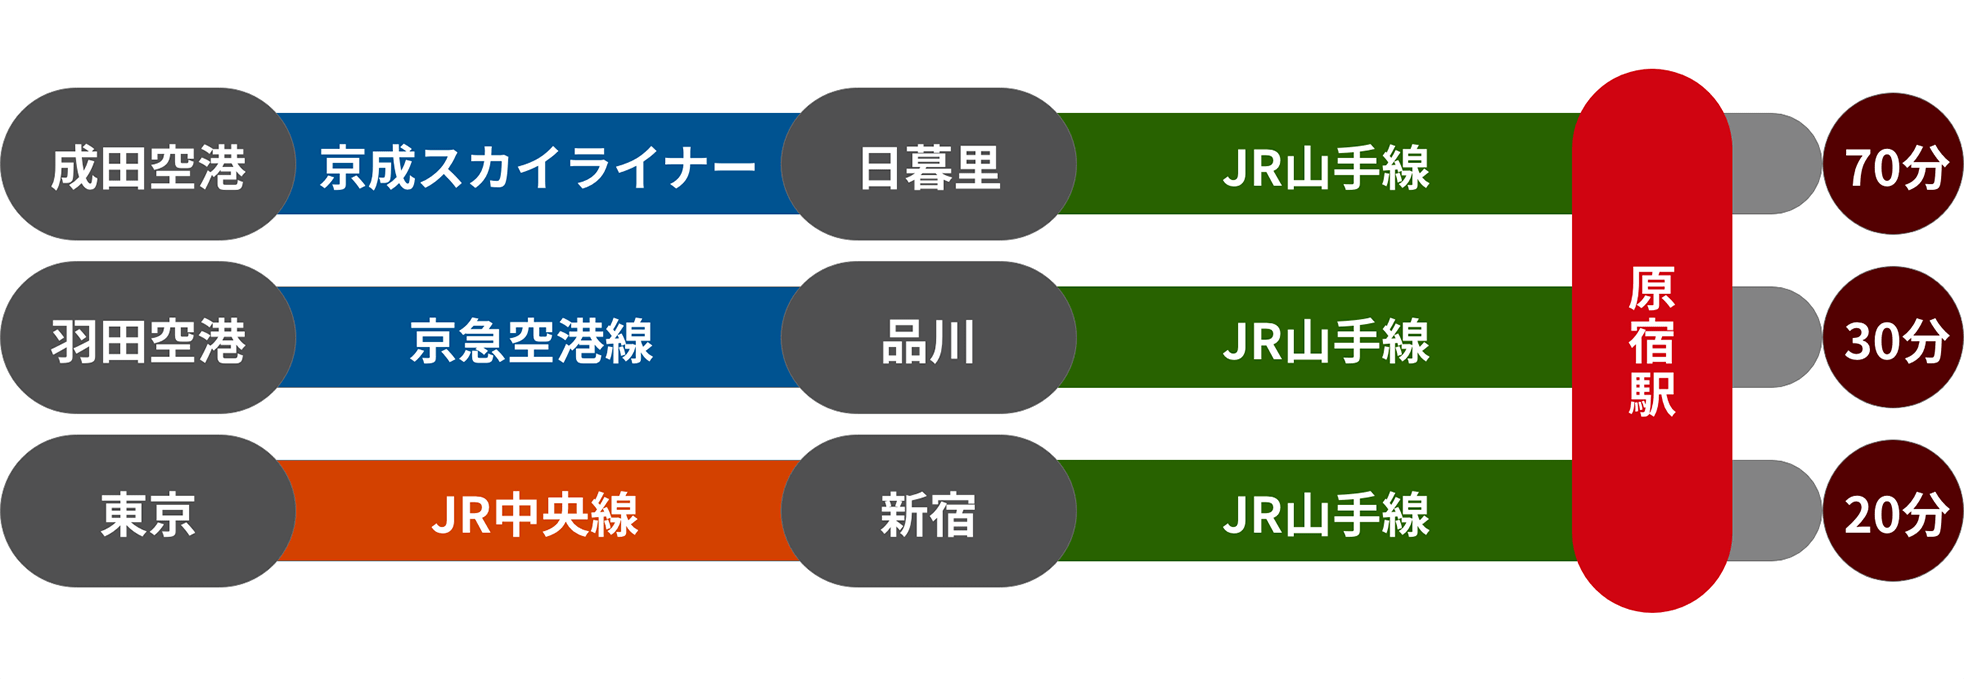 原宿駅までの路線図